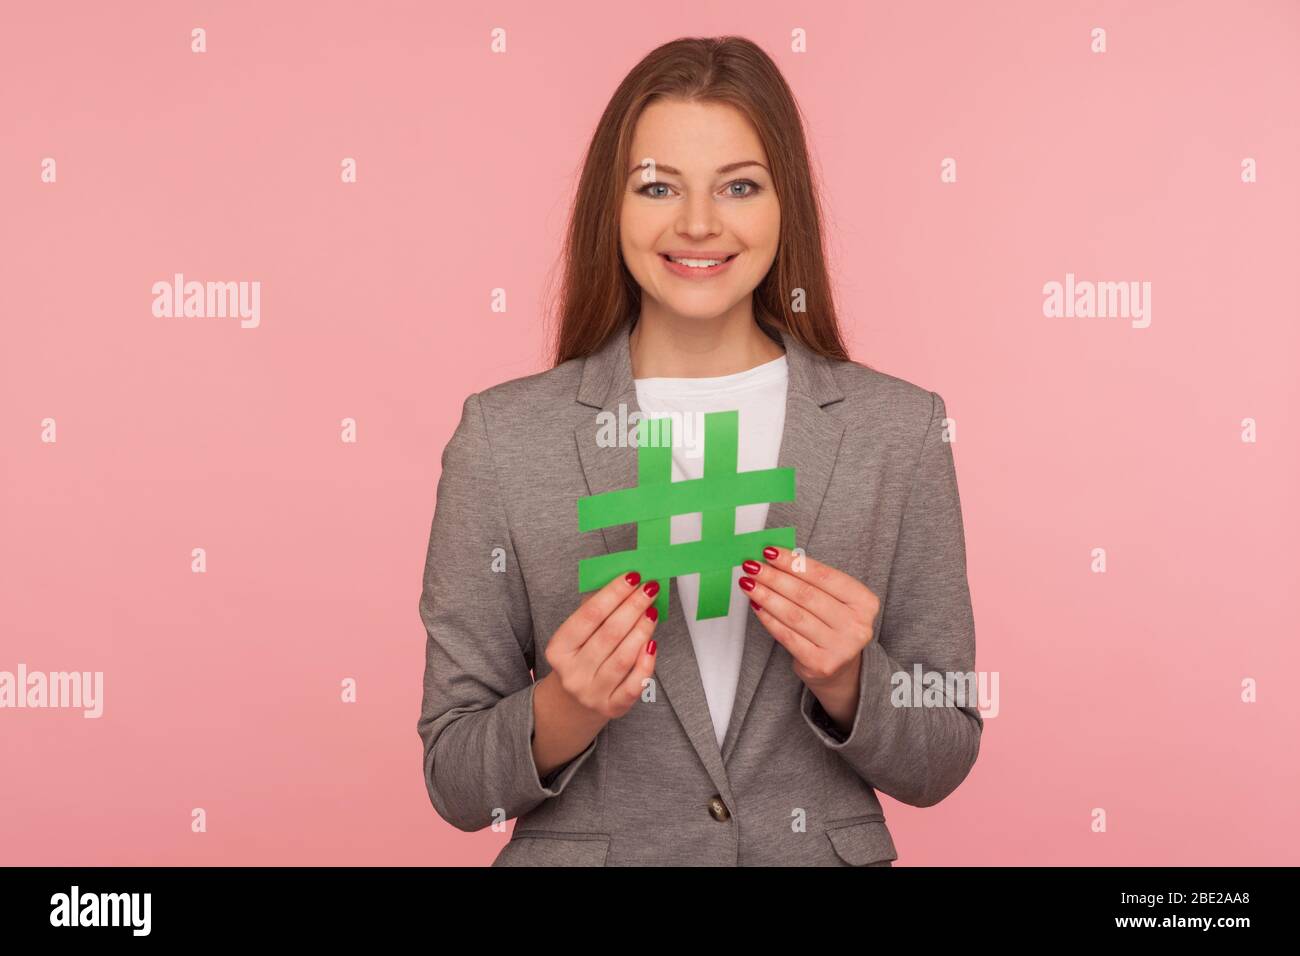 Hash-Zeichen. Porträt von positiven eleganten Frau in Business-Anzug halten Papier Hashtag Symbol, Förderung von Web-Content und virale Internet-Ideen, Blog-Marke Stockfoto